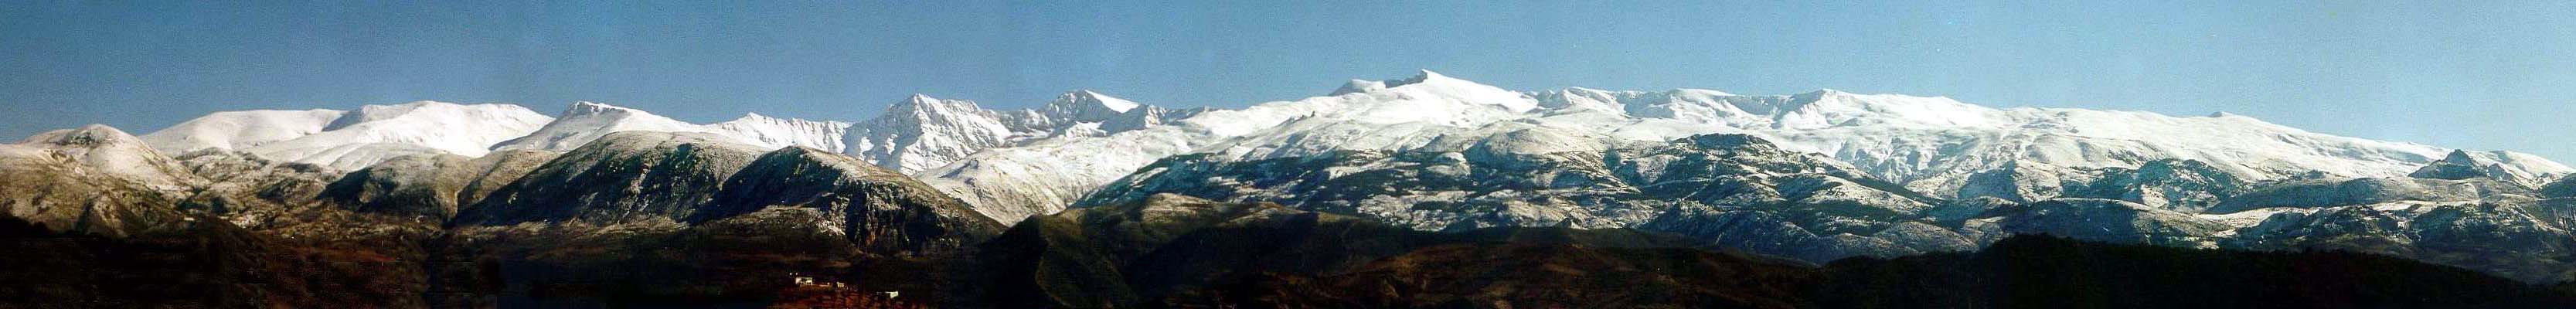 Sierra Nevada im Winter